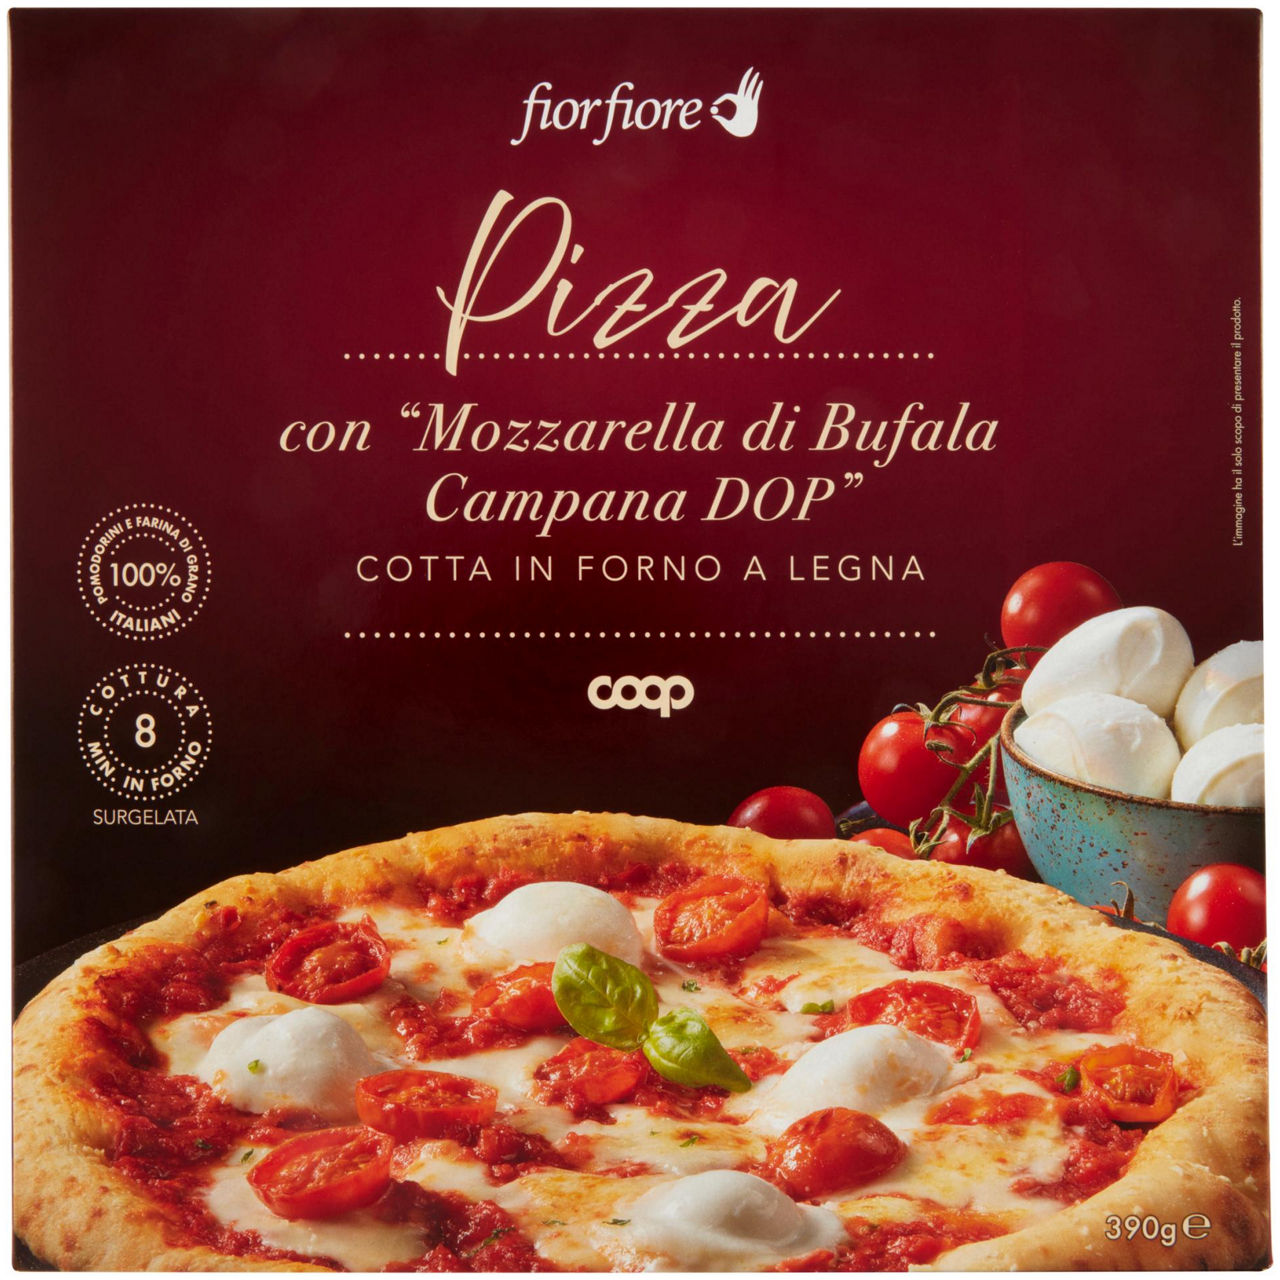 Pizza con mozzarella di bufala campana fiorfiore coop surg. g 390